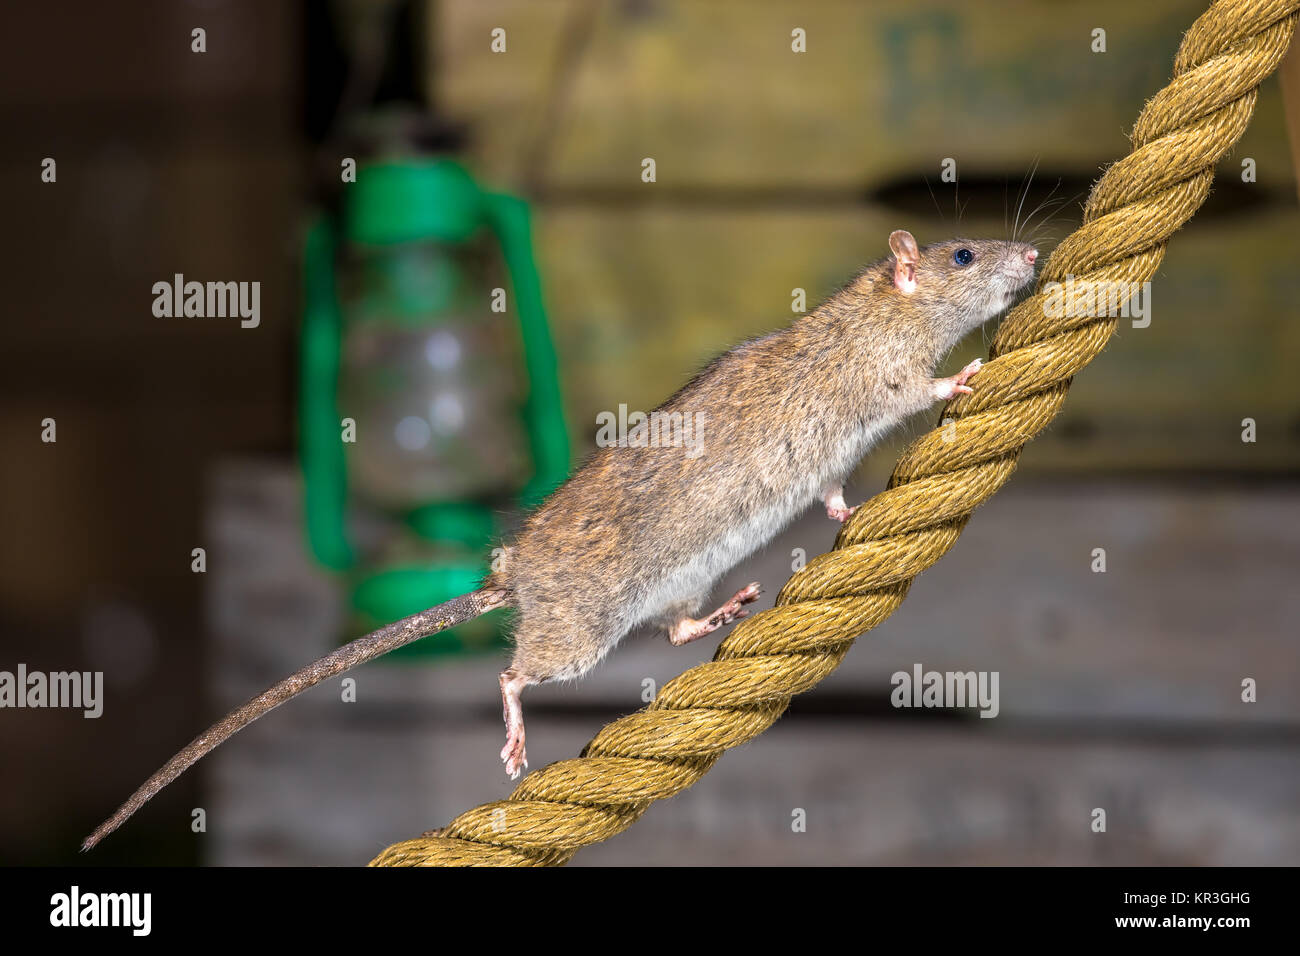 Salvaje Rata marrón (Rattus norvegicus) caminar sobre la cuerda de anclaje en el puerto de configuración de almacén Foto de stock